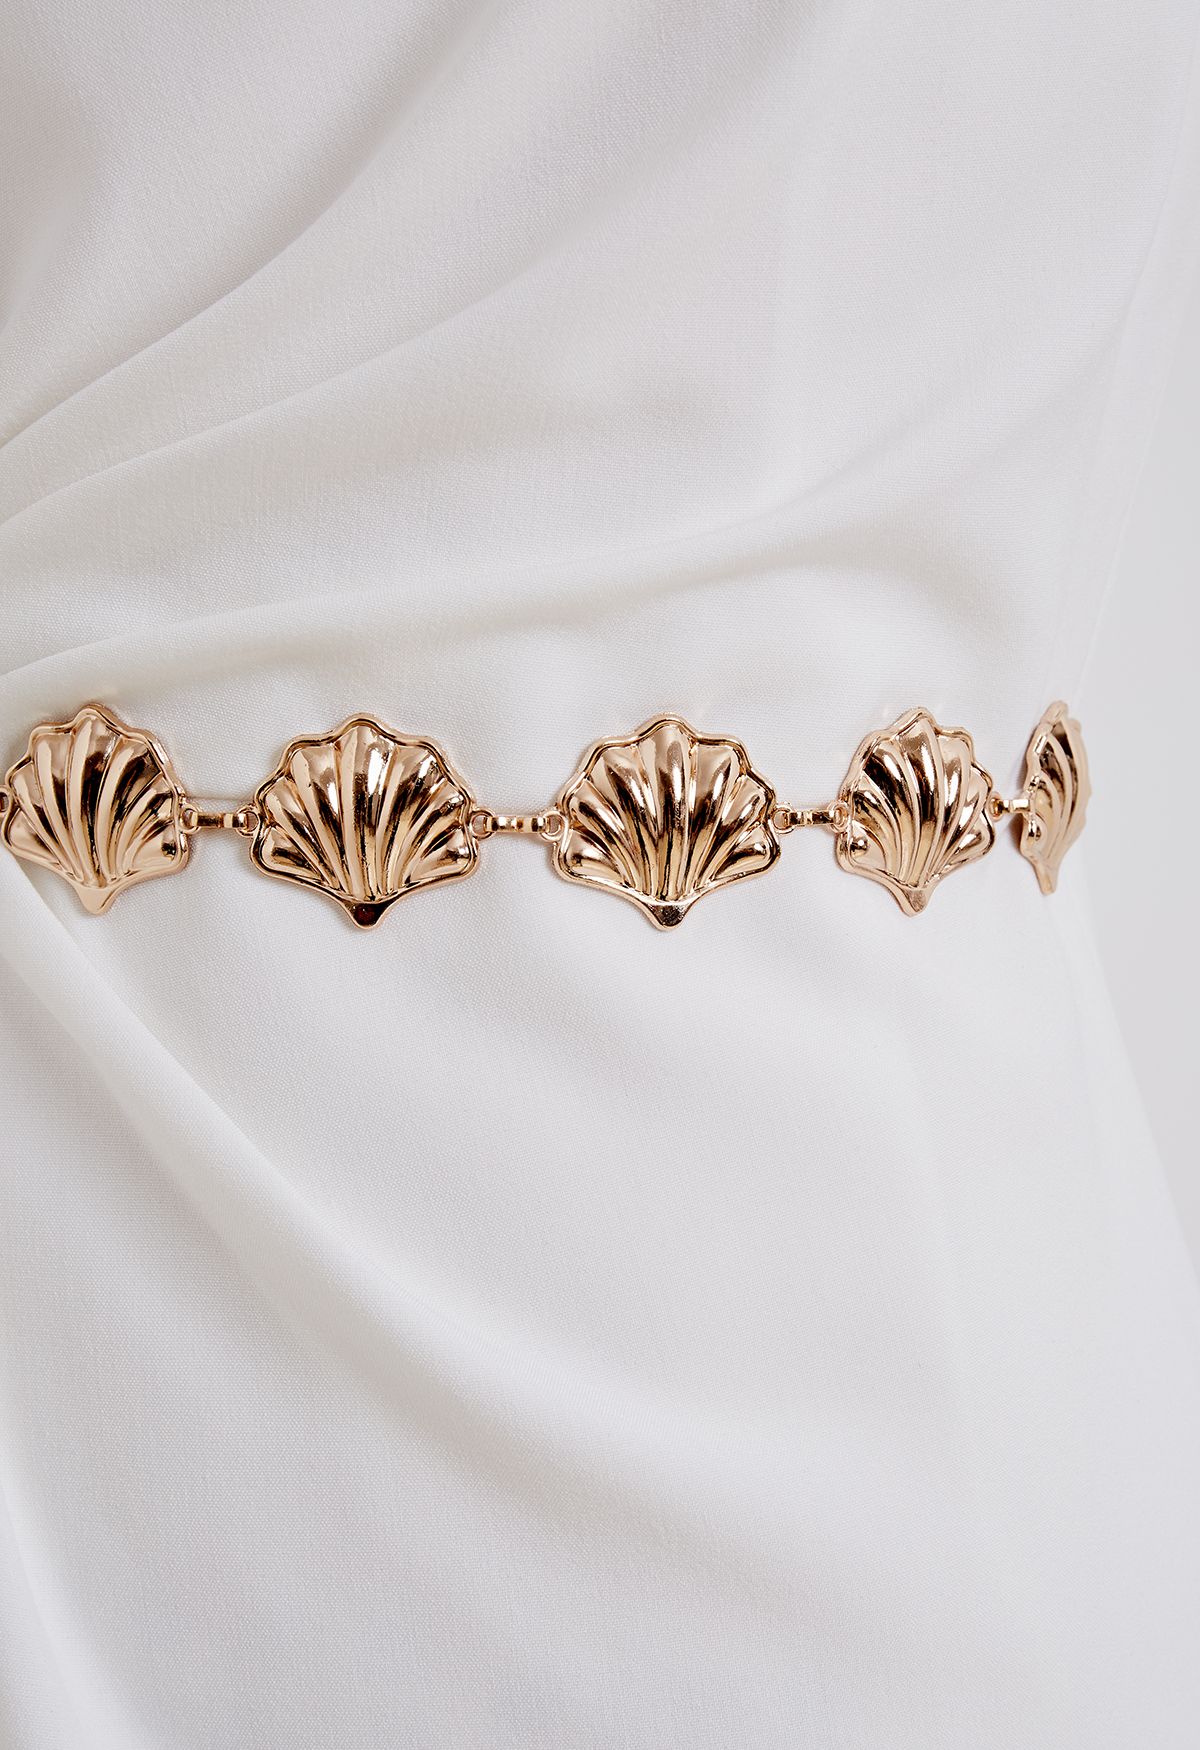 Elegante cinturón de cadena de conchas marinas doradas